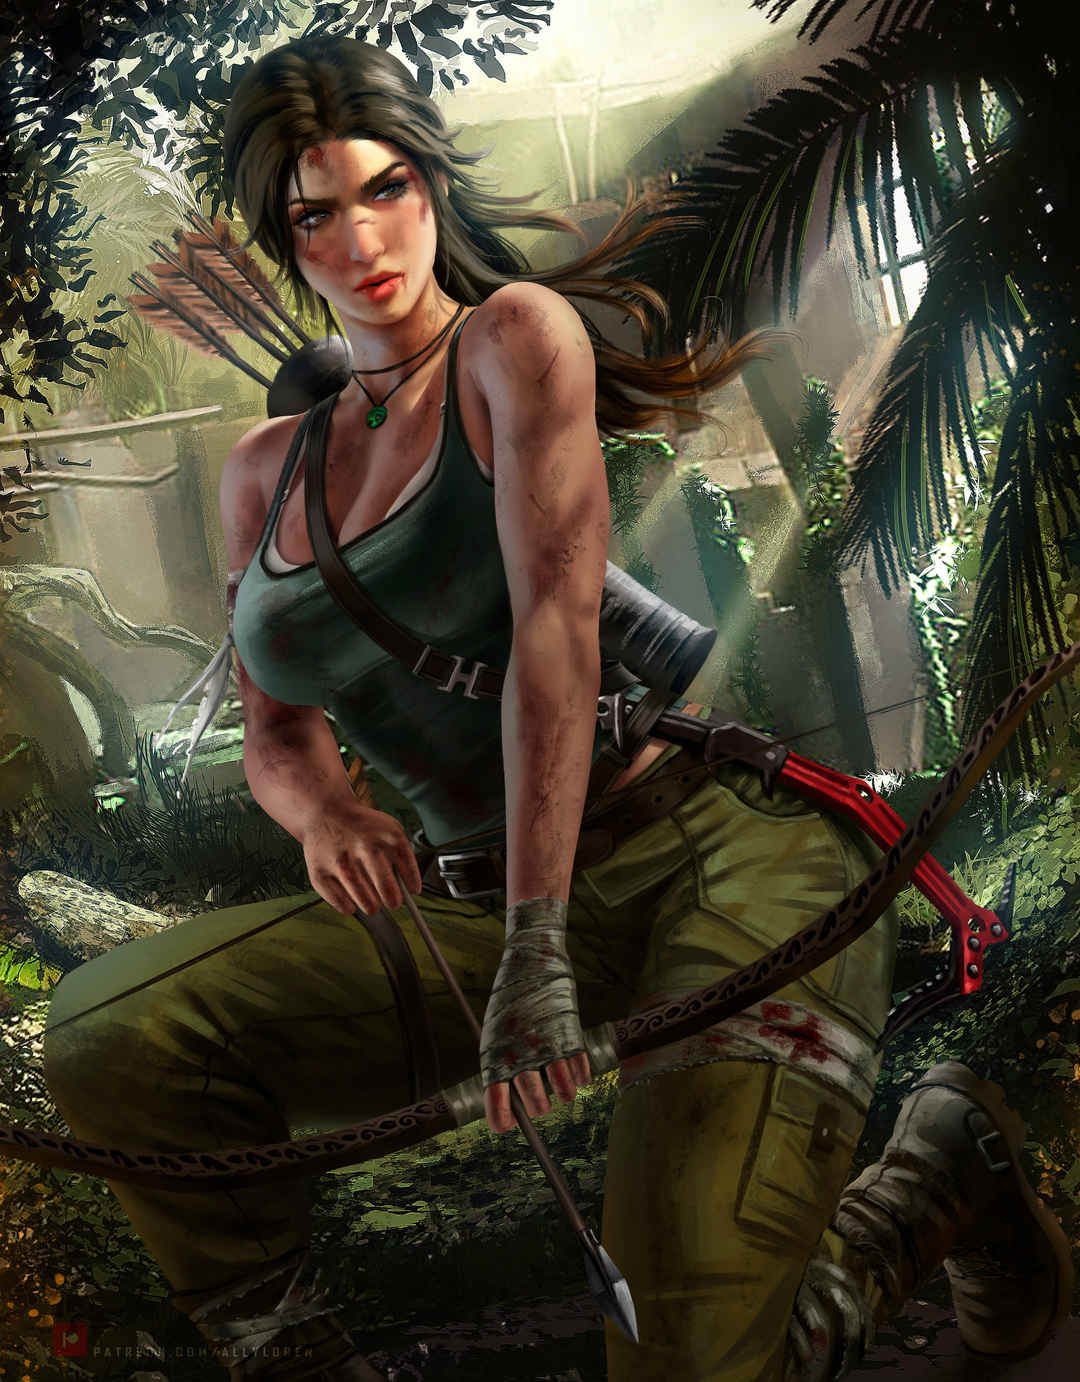 劳拉·克劳馥(Lara Croft)古墓丽影 女猎手 弓箭 丛林女王